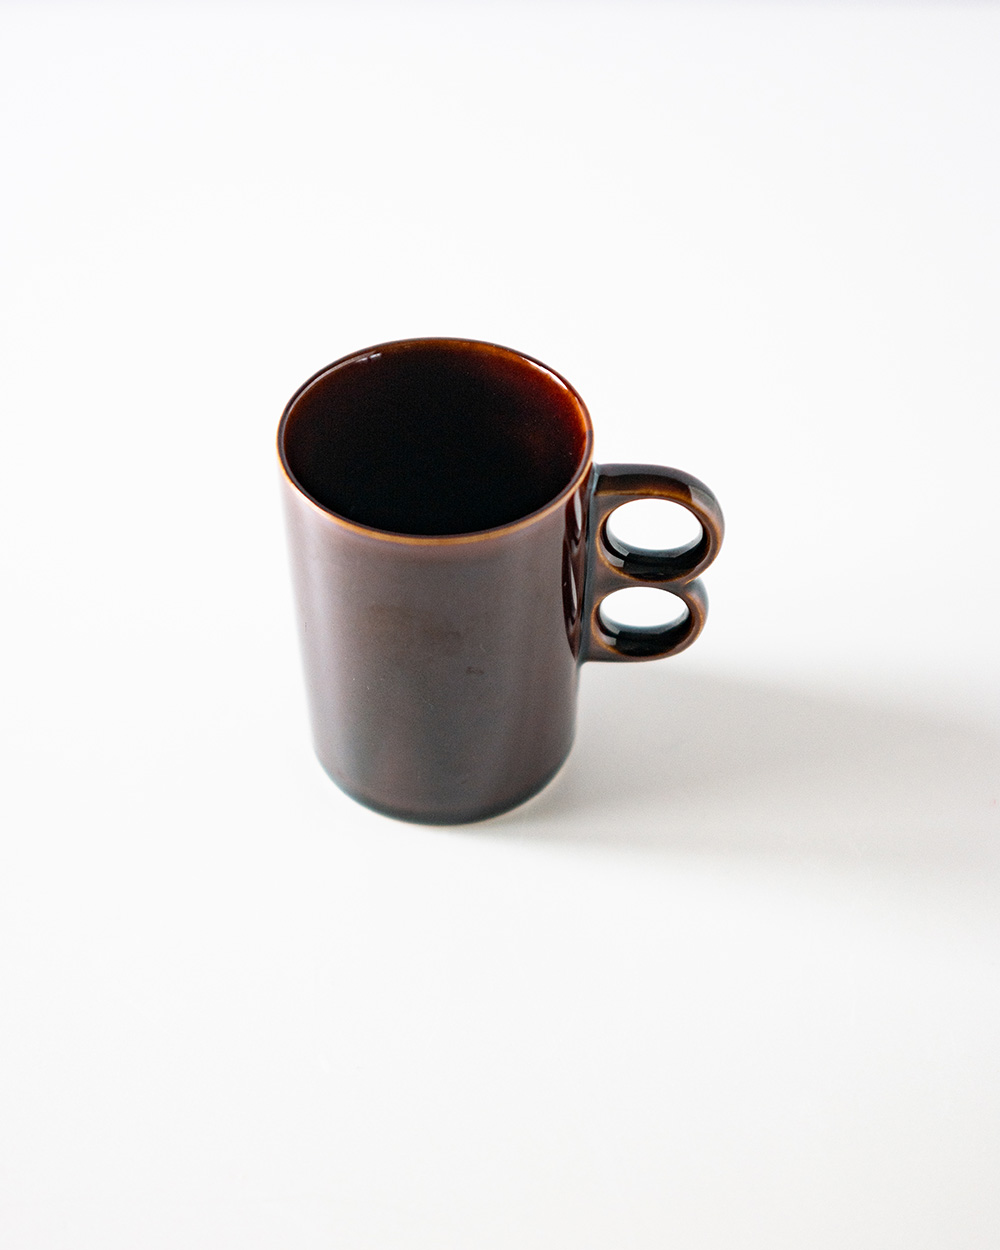 Double handle mug